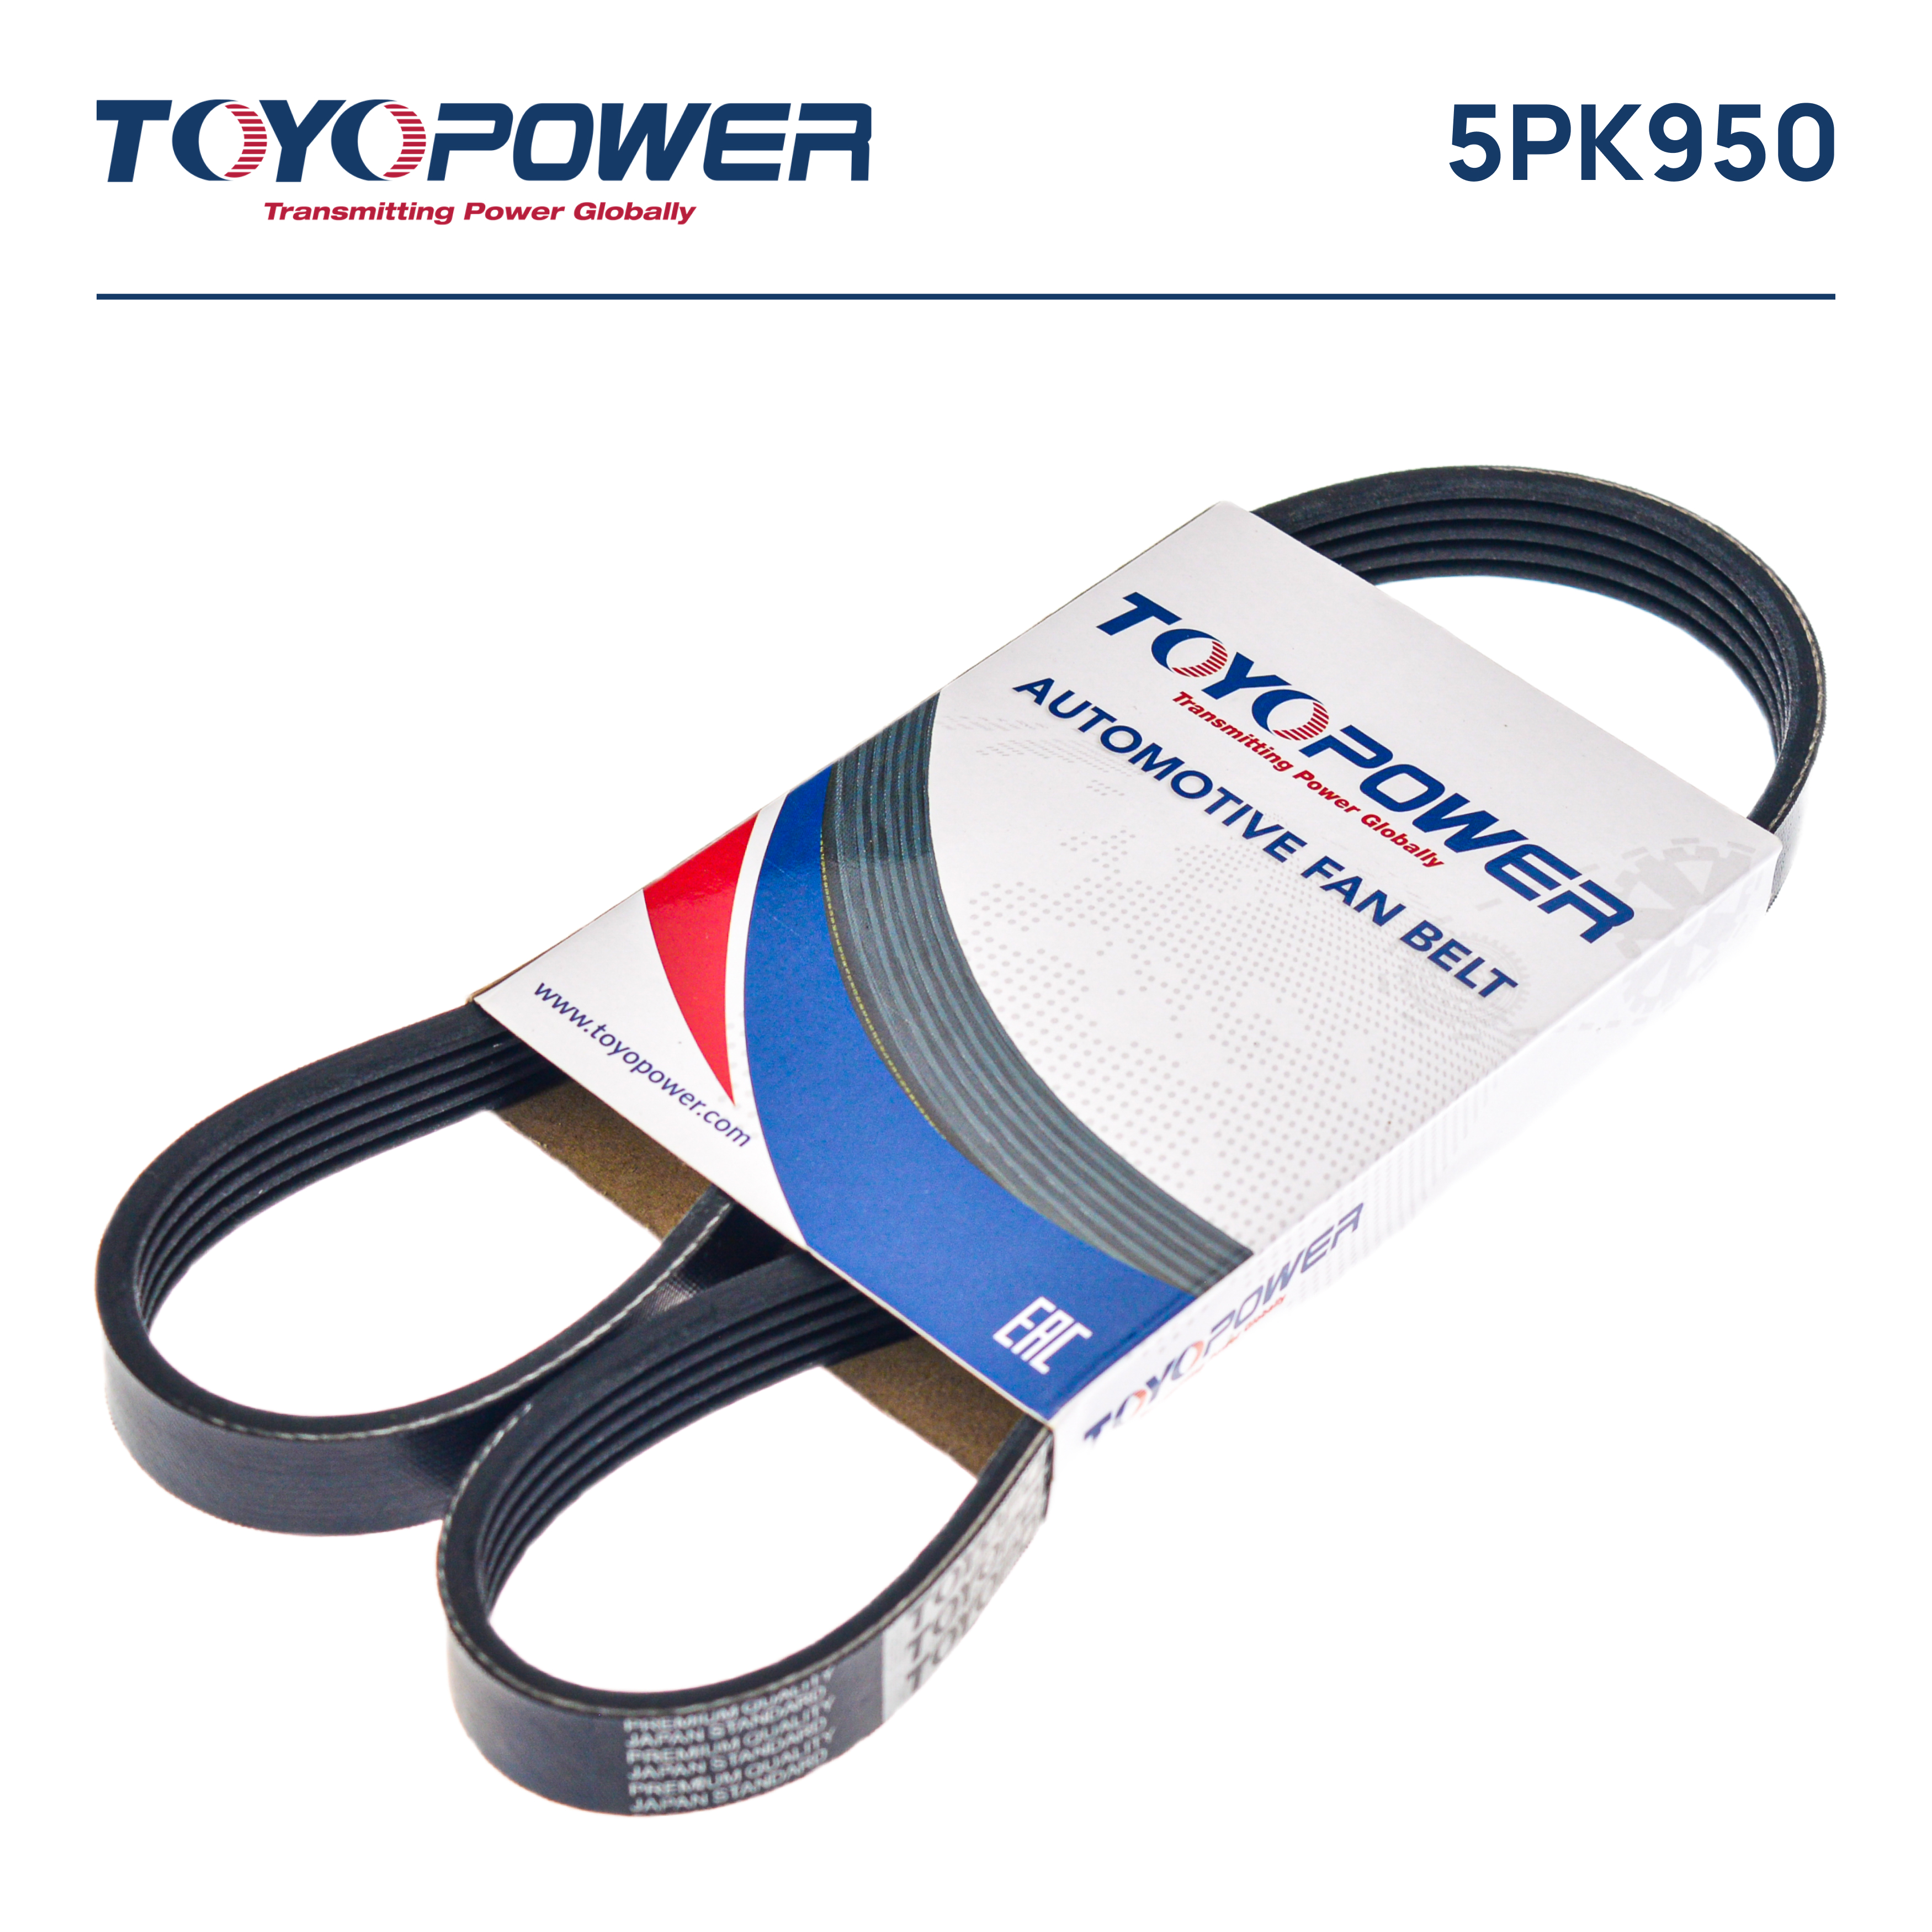 Ремень поликлиновый - Toyopower 5PK950